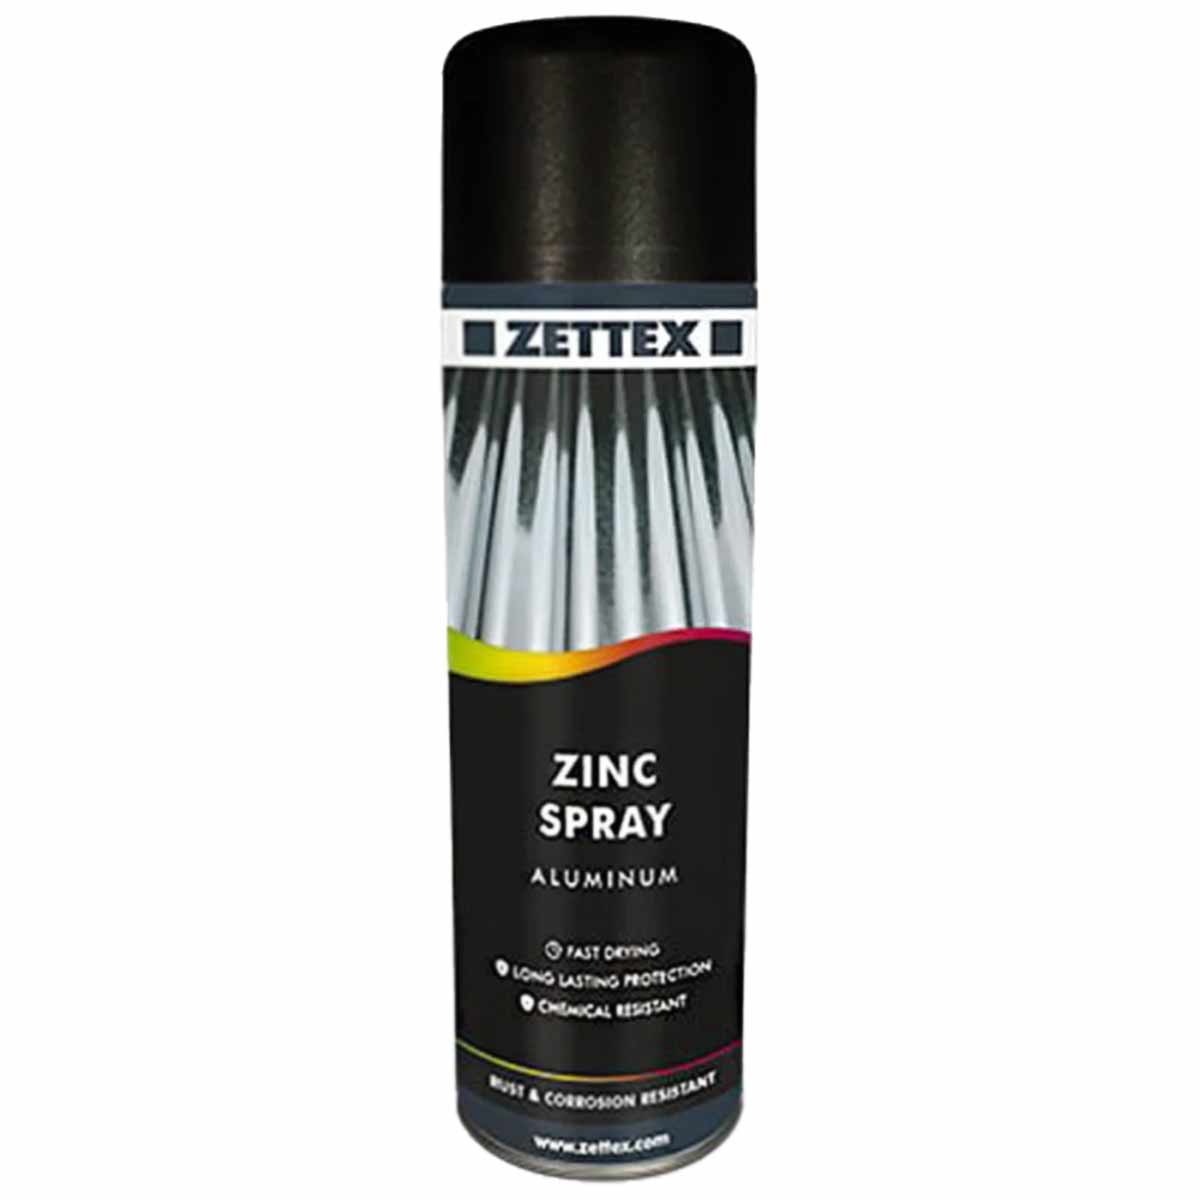 57532اسپری محافظتی روی زتکس Zettex Zinc Spray